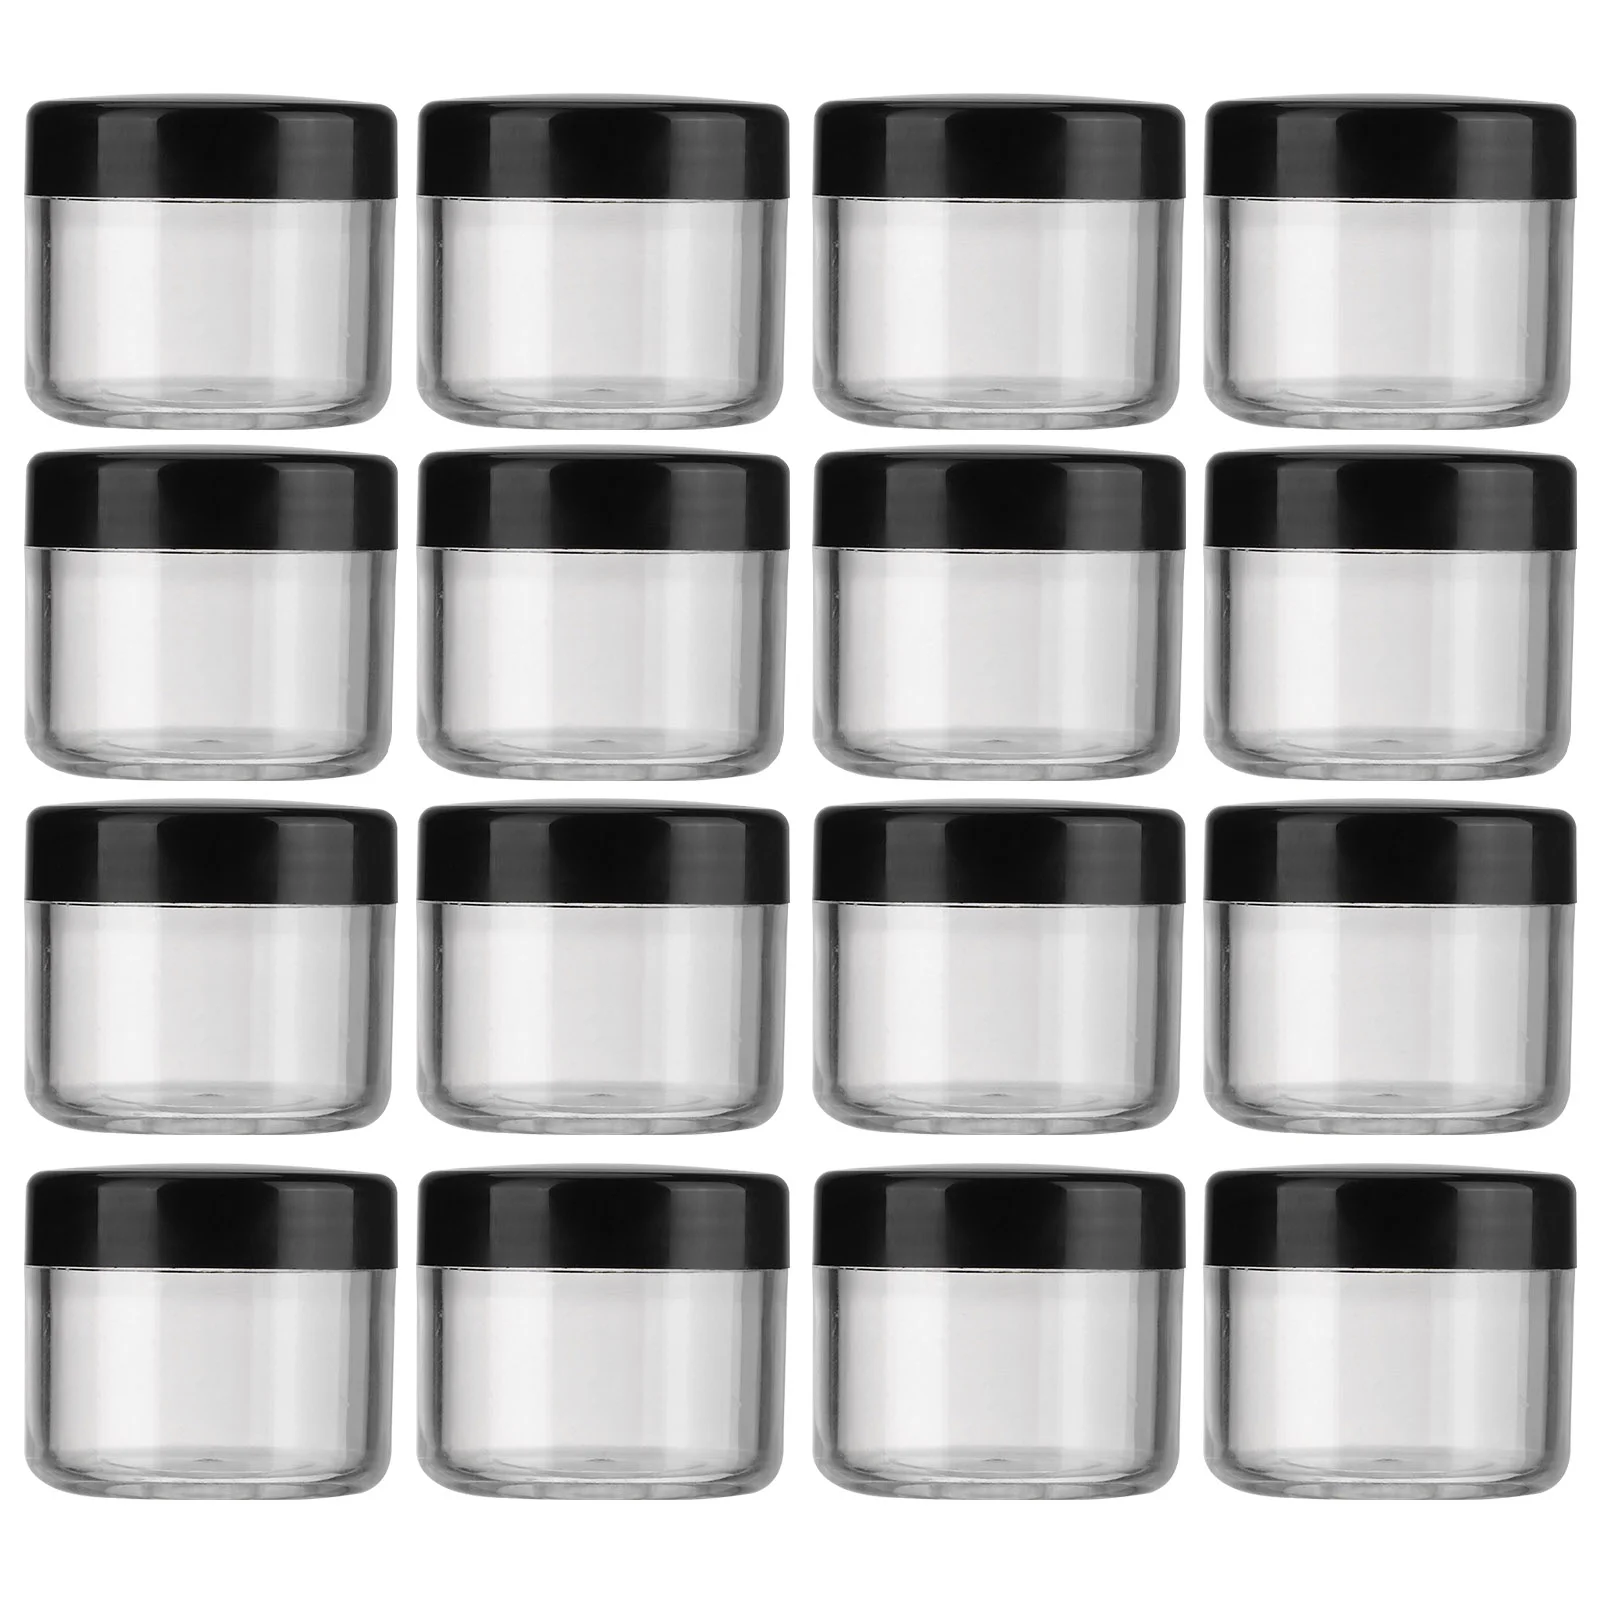 20pcs Lip Balm Jars Mini Jars Cosmetics Lotions Butters Body Sugar Beauty Products Storage Jars